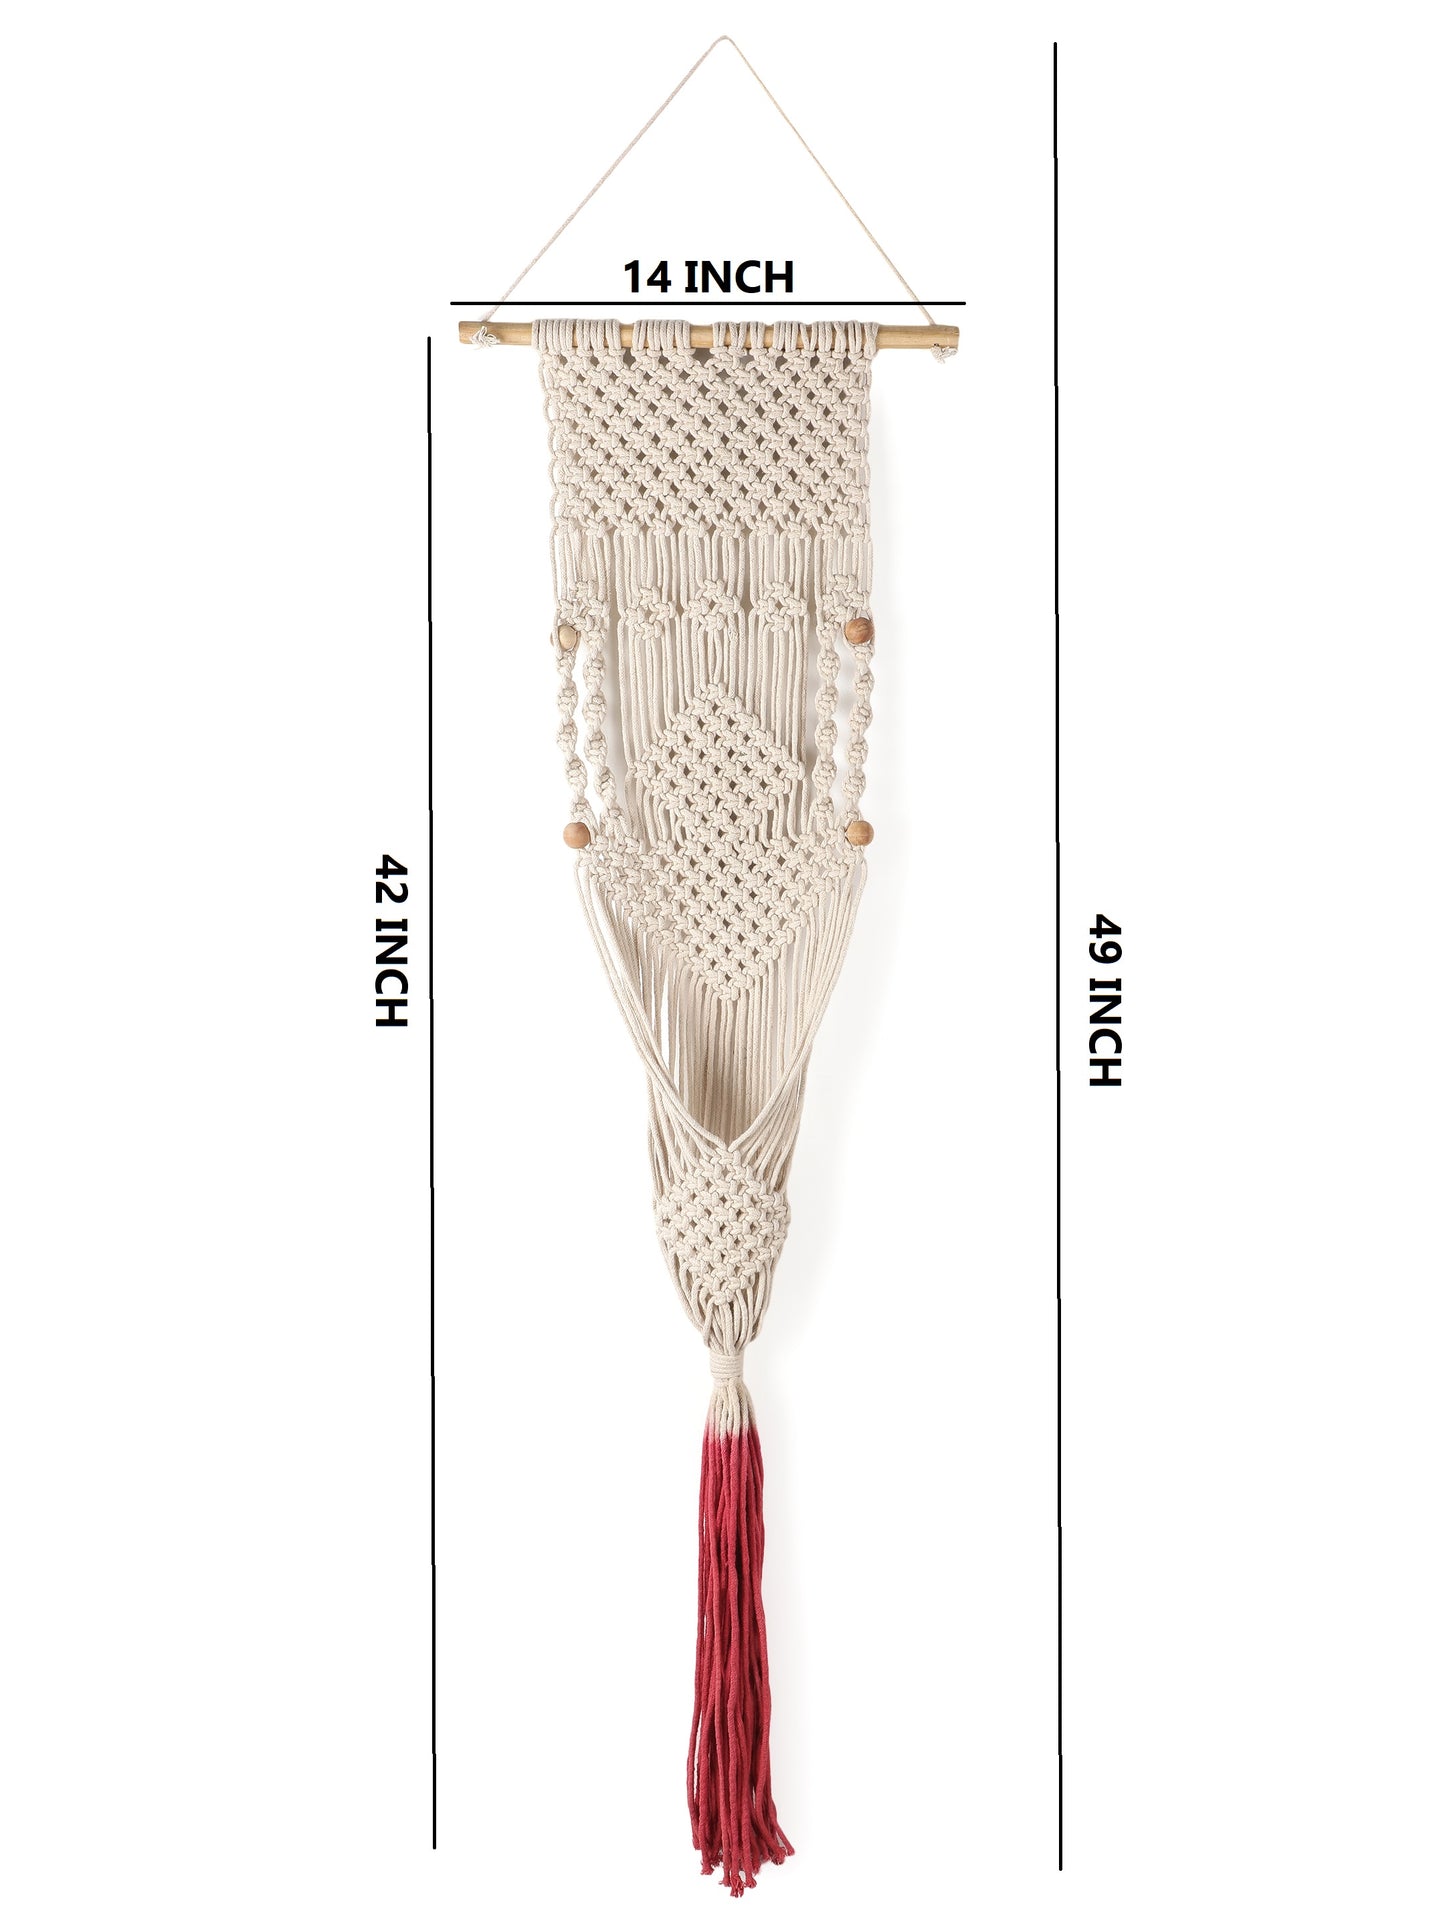 NUEVOSGHAR Macrame Plant Hanger | Boho Plant Holder | Hand Made Crochet Plant Holder | Indoor-Outdoor Wall Hanging Plant Holder | Beige-Pink